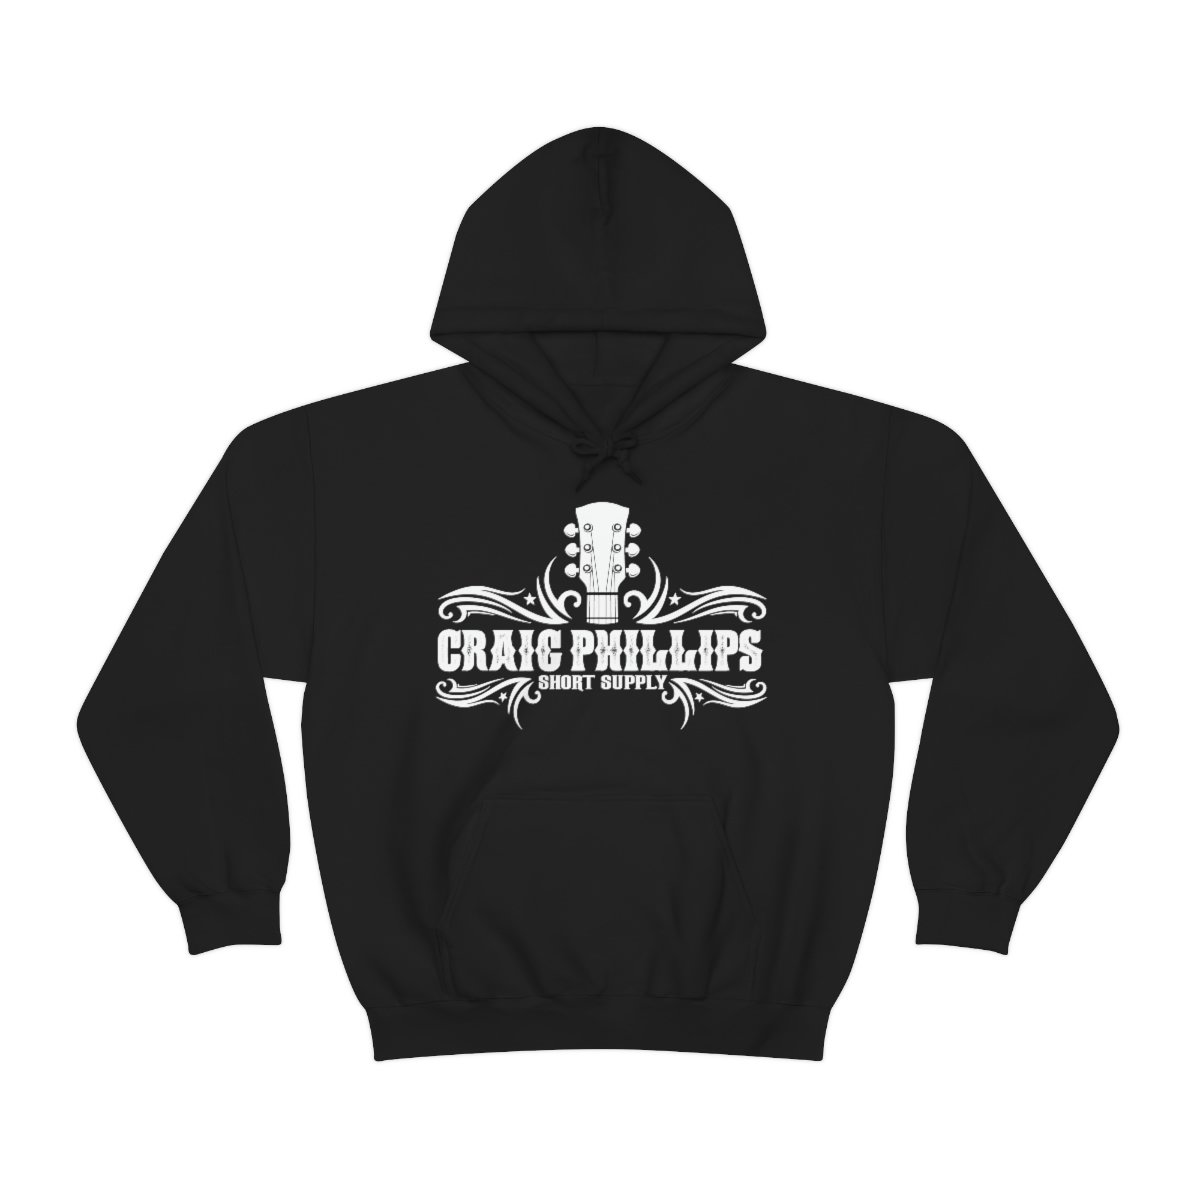 Craig Phillips – Short Supply Pullover Hooded Sweatshirt